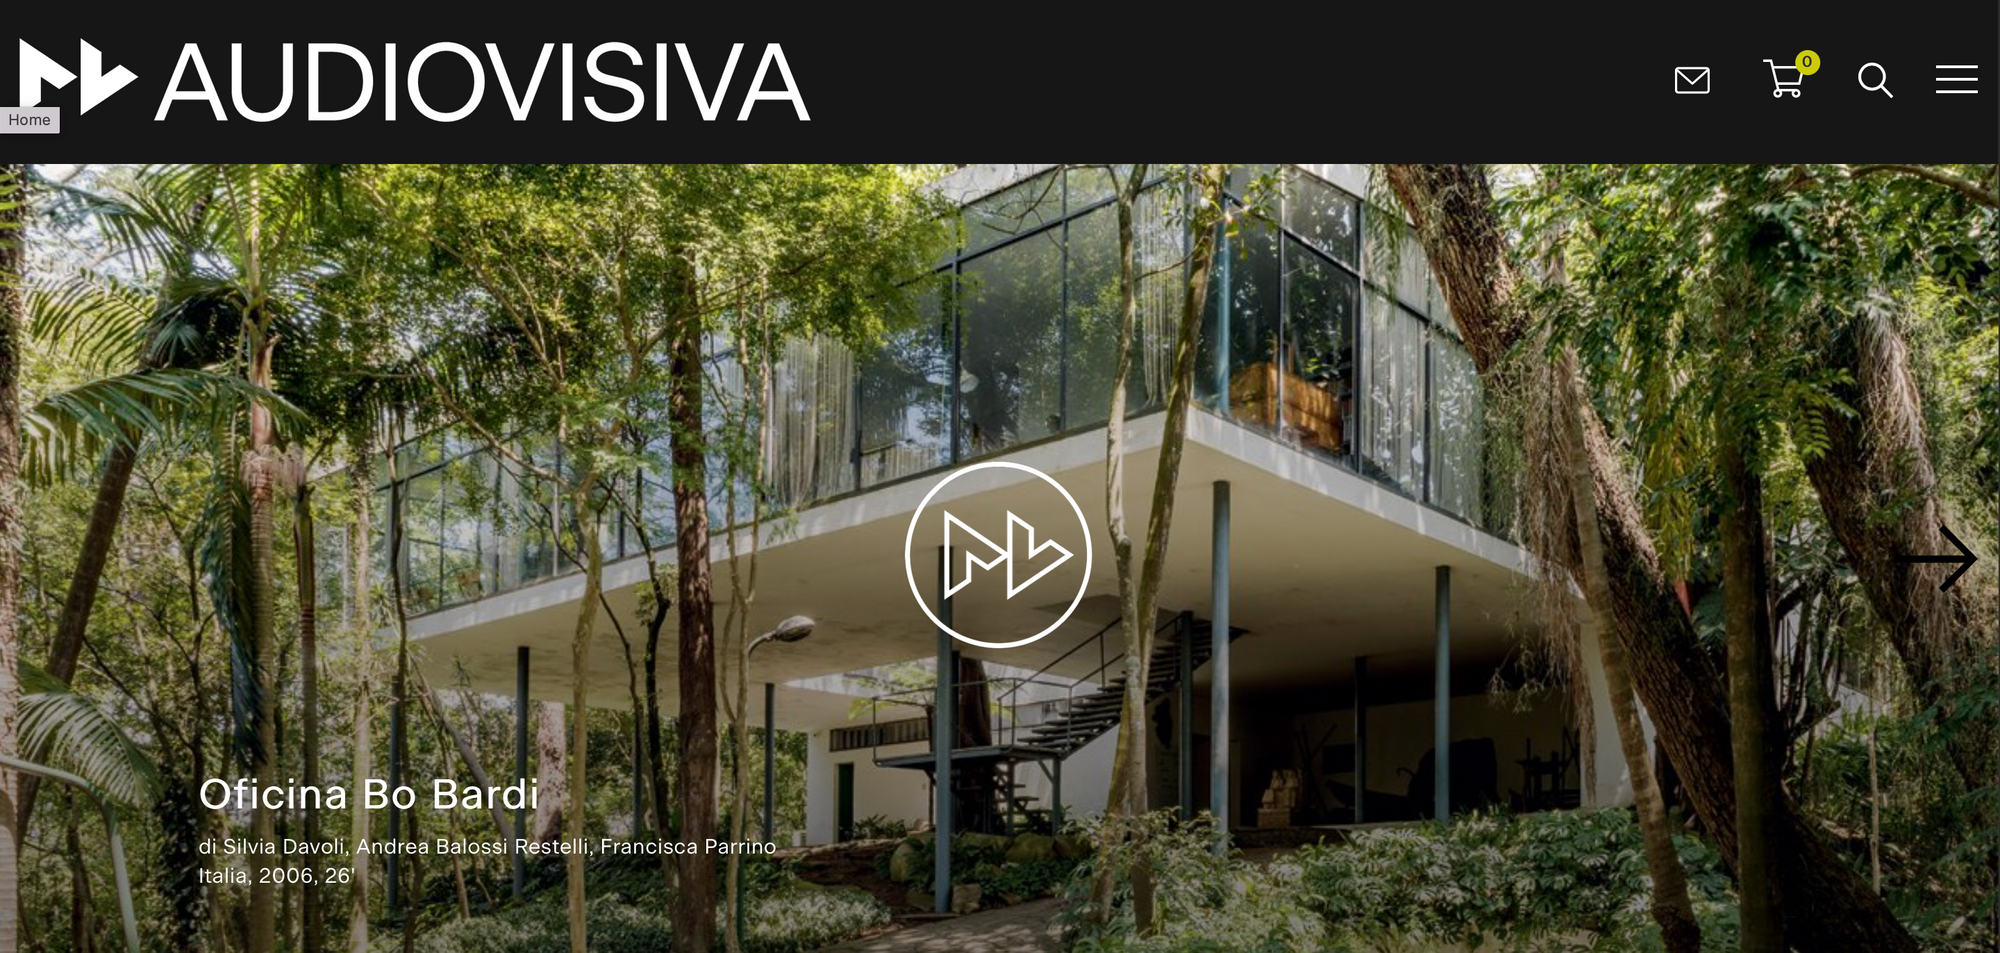 I migliori documentari su arte, architettura e design da oggi in streaming su Audiovisiva.